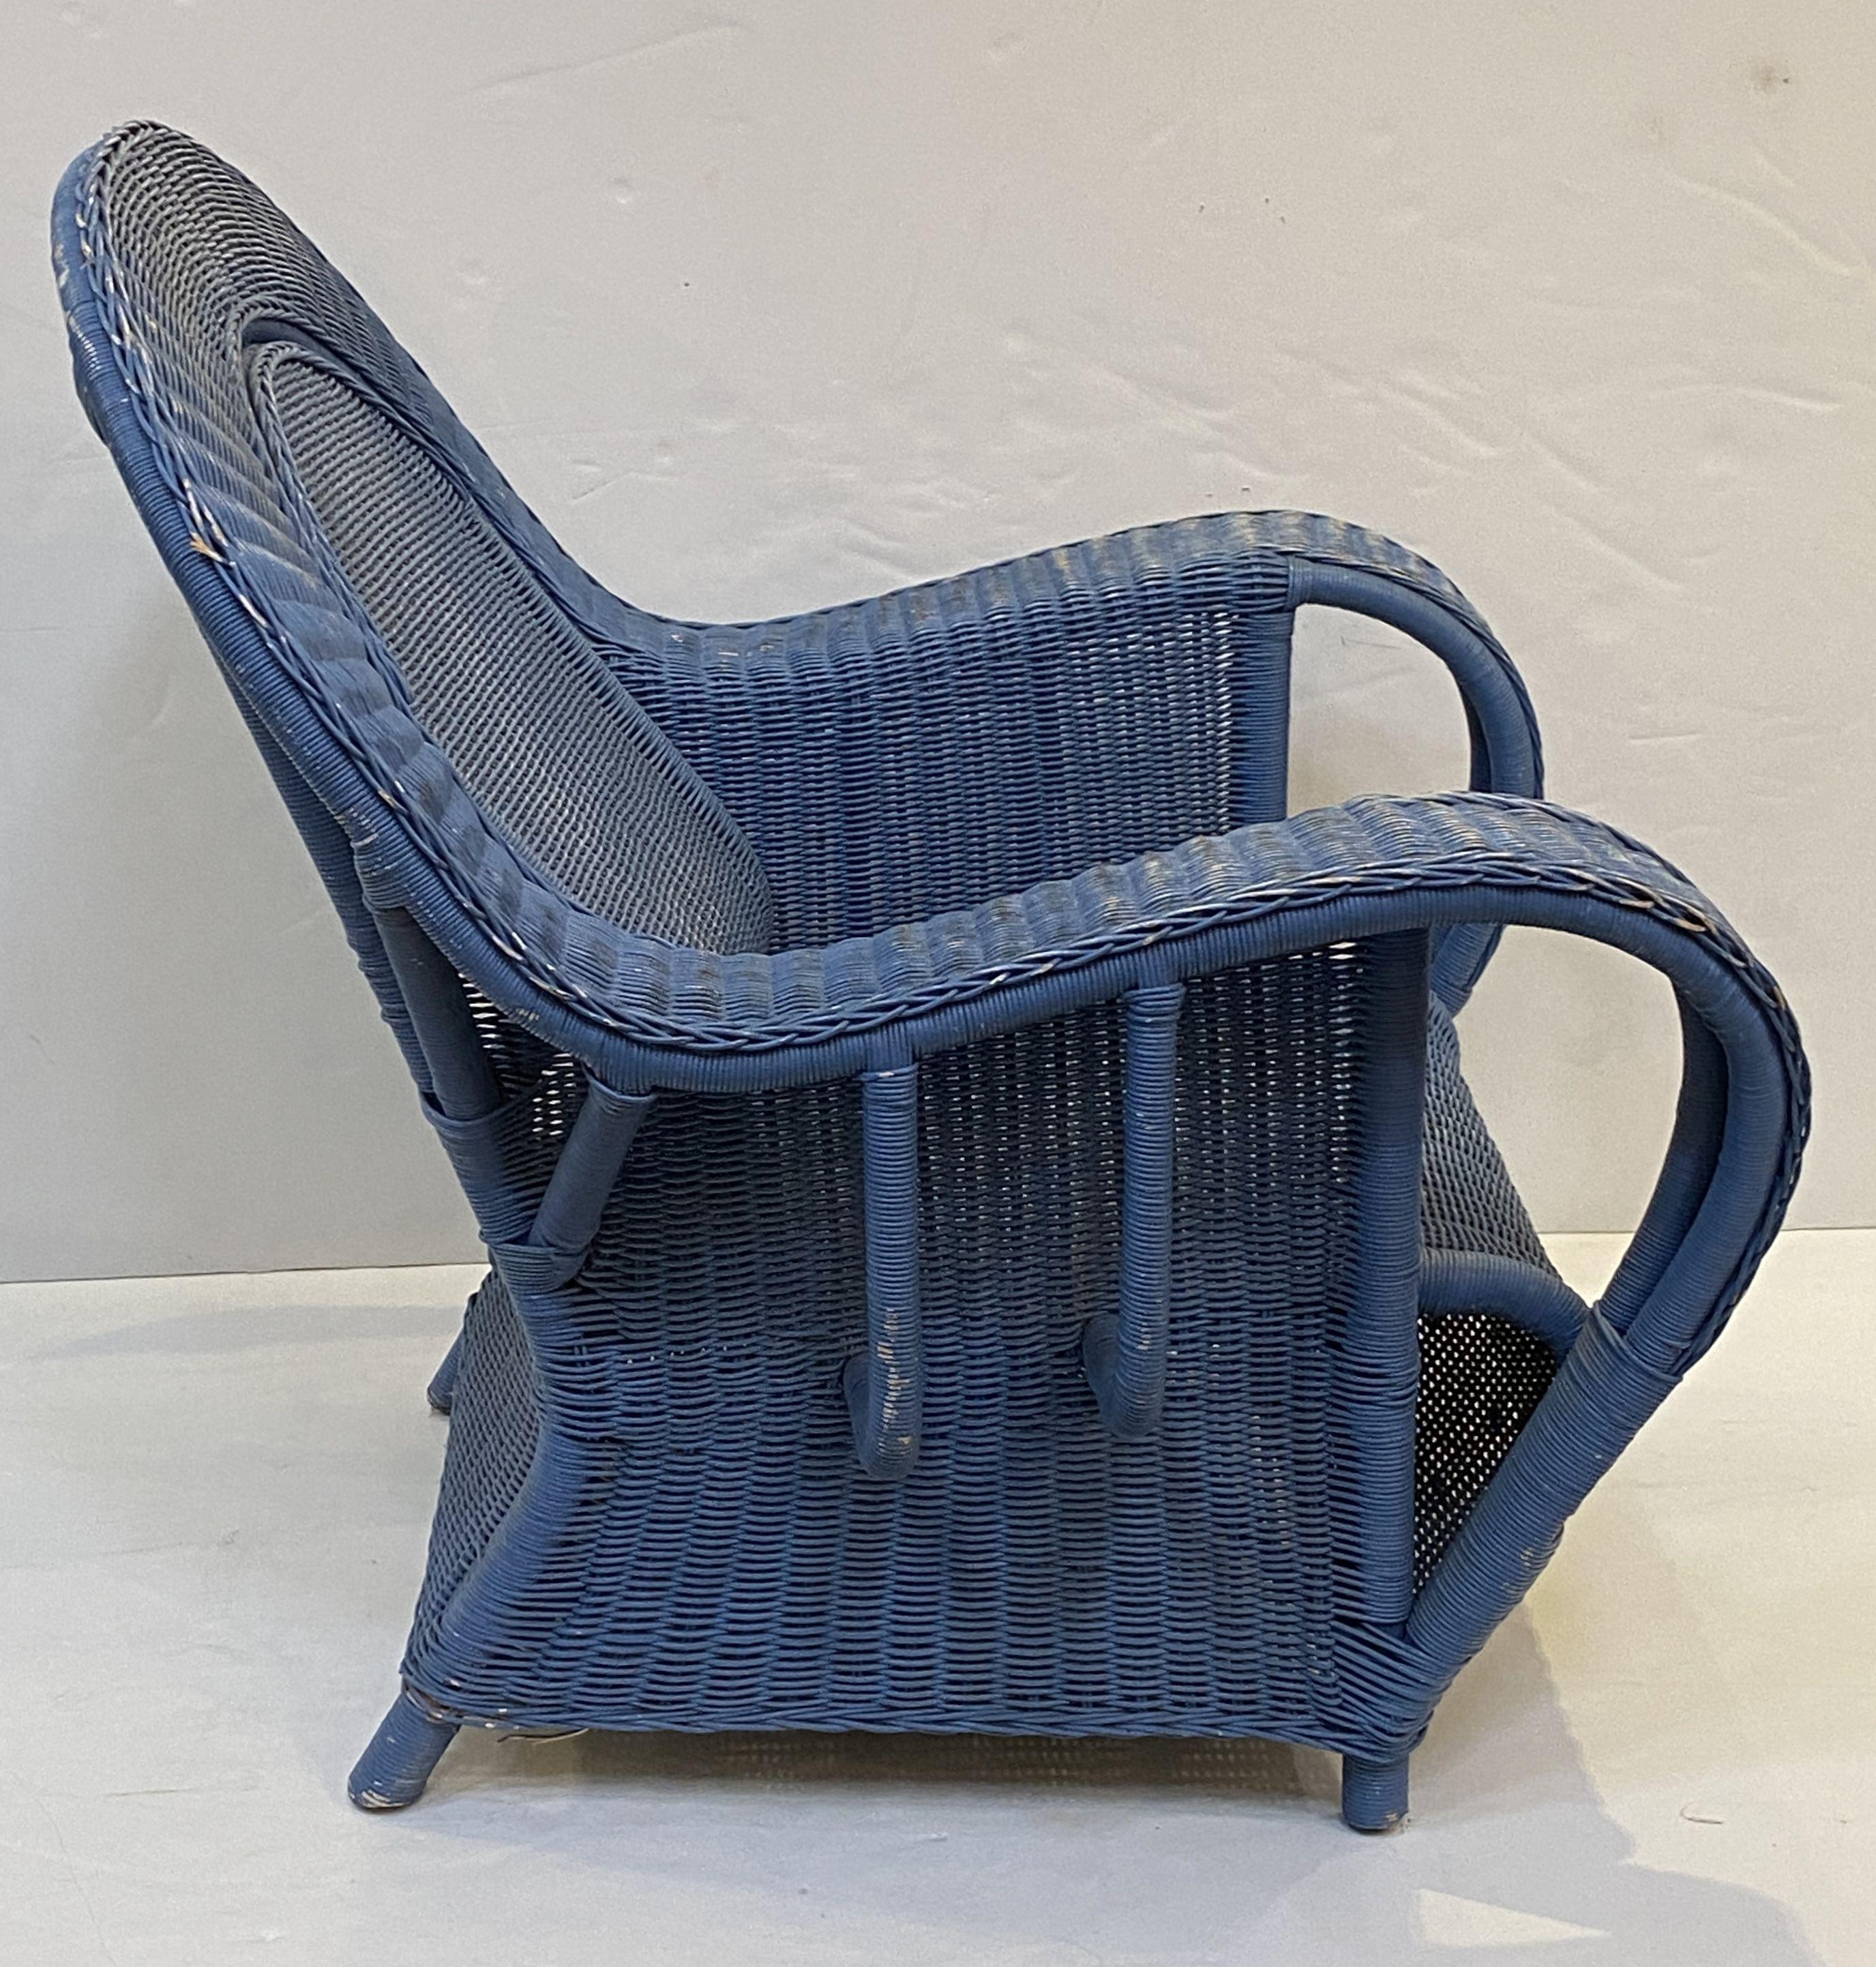 Paire de fauteuils de salon en osier tressé de style Art Déco. Chaque fauteuil présente un extérieur peint en bleu délavé, un dossier et des accoudoirs en volute, une assise confortable et repose sur un piètement à quatre pieds.

Dimensions